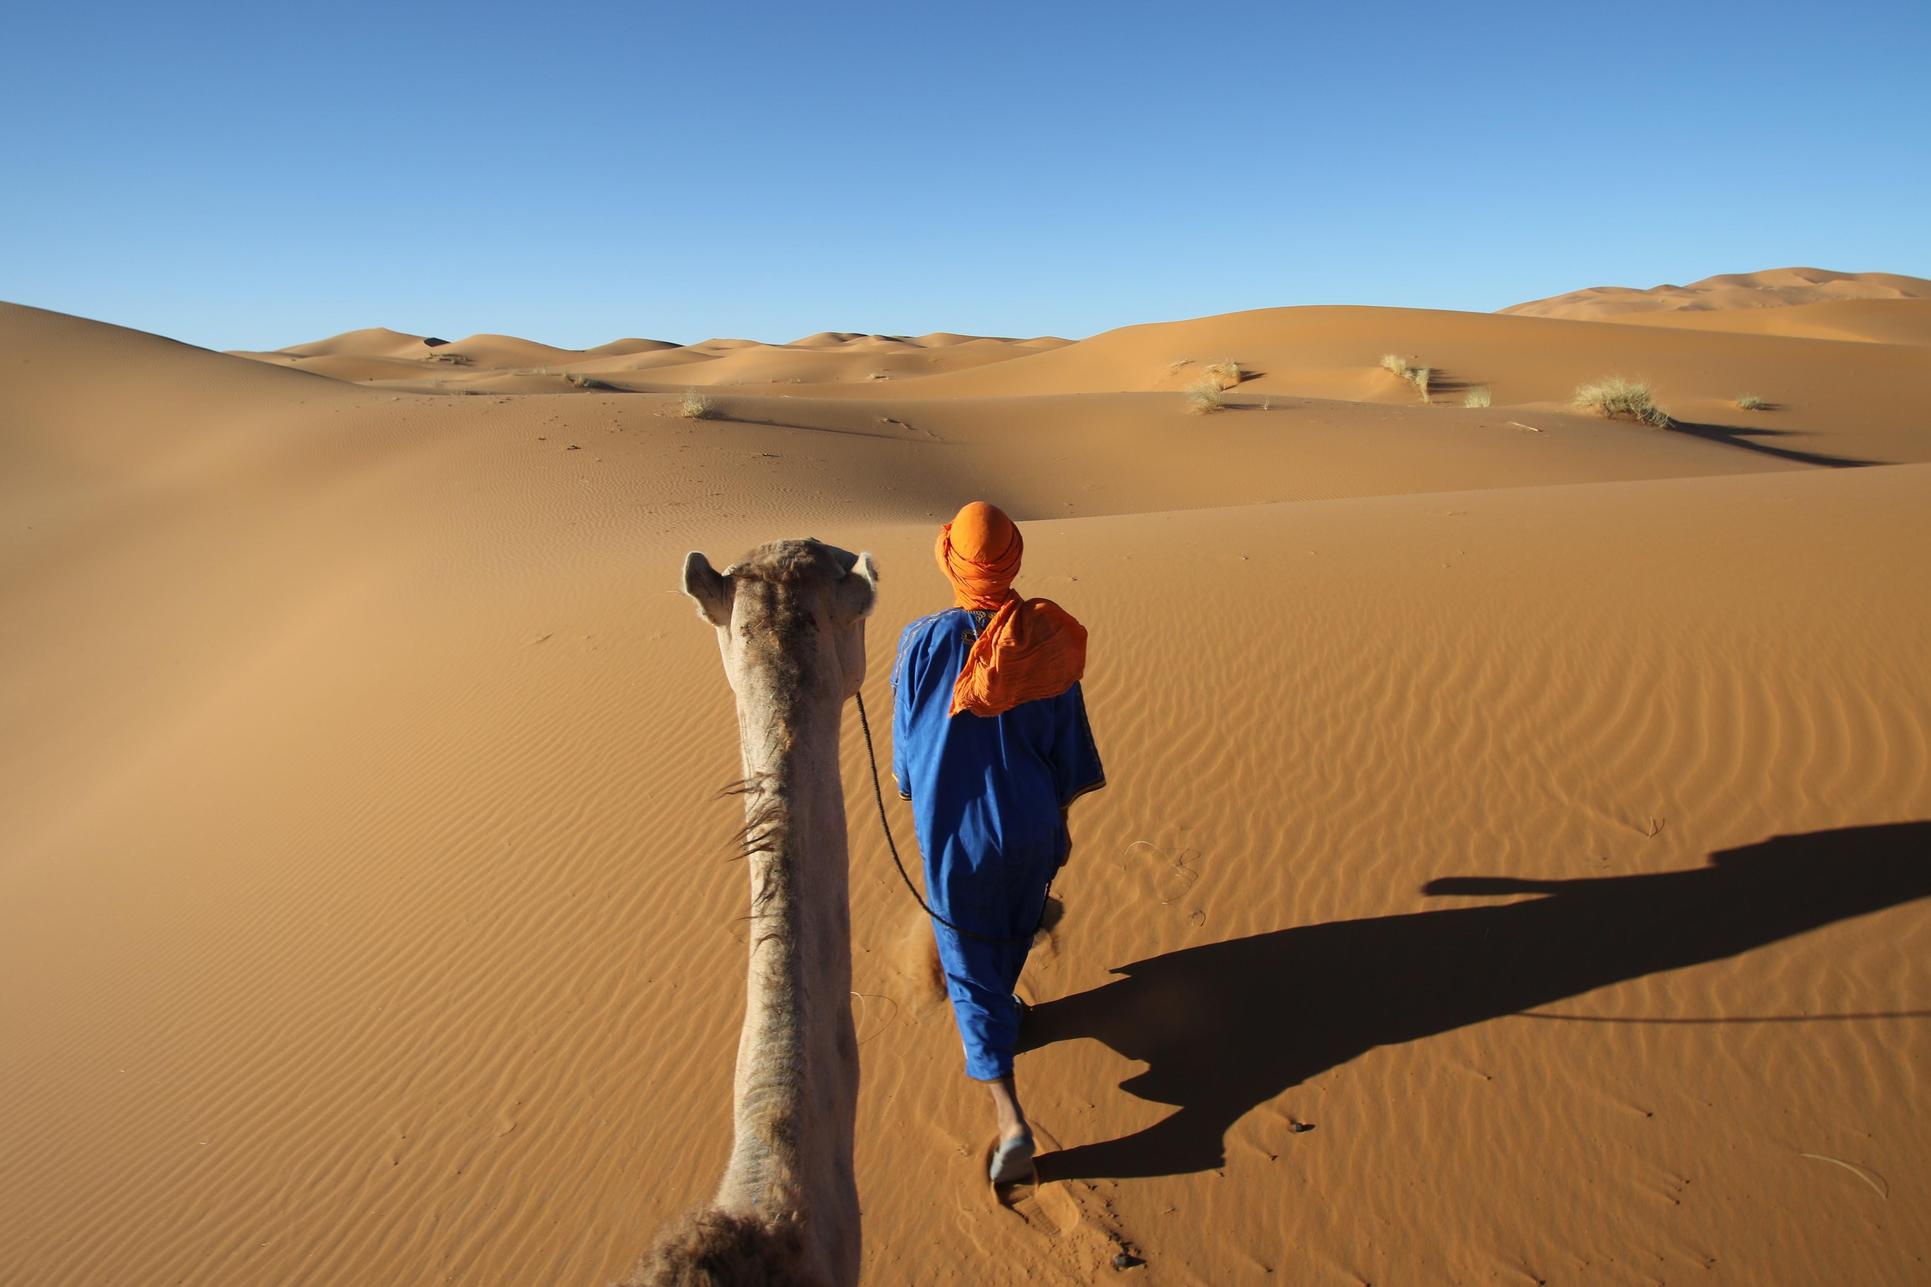 Acanela: Win a Trip to Morocco